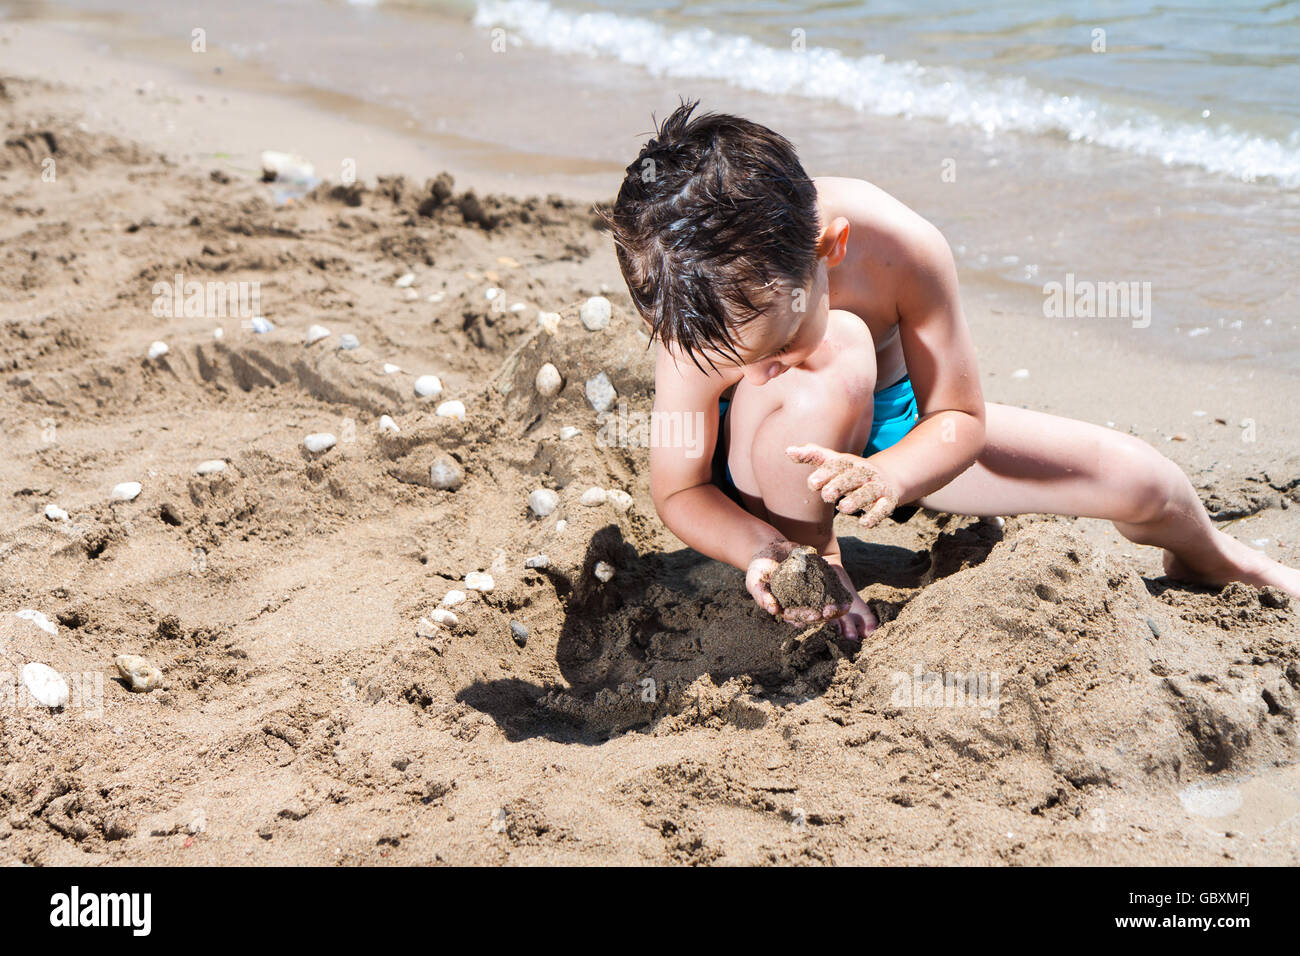 kleiner Junge im blauen Meer mit Sandkuchen und Sand spielen Stockfoto